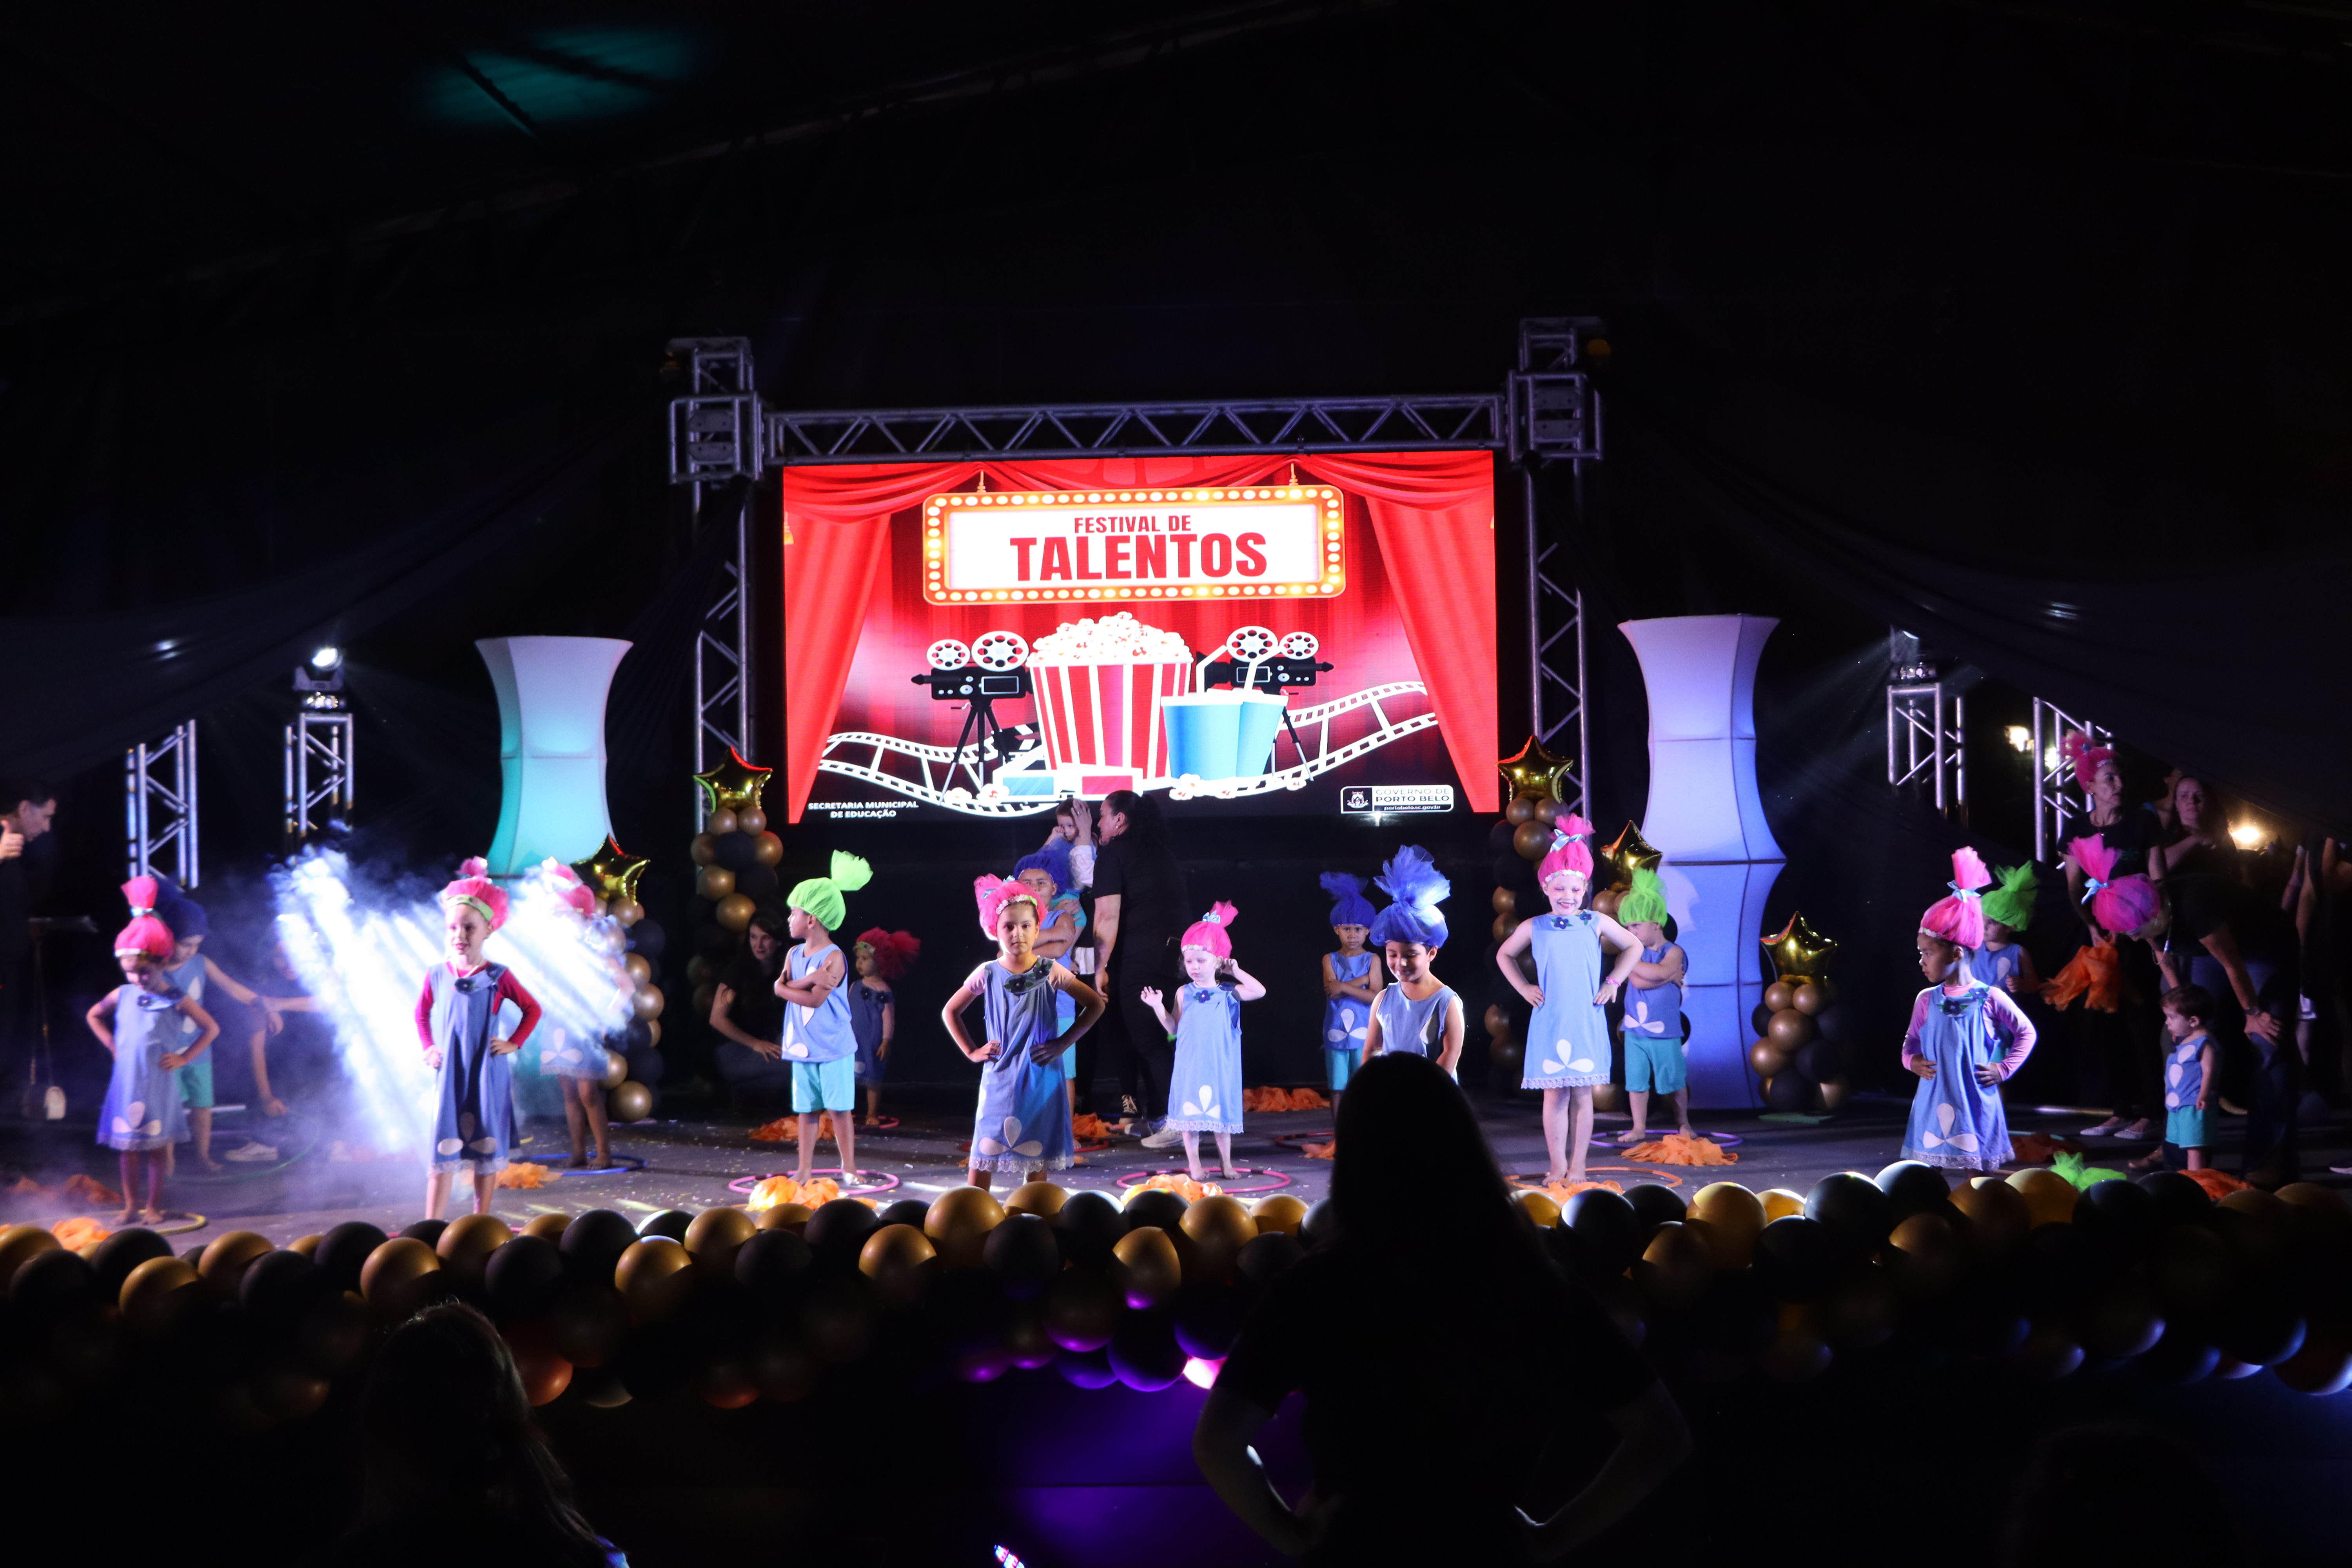 Festival de Talentos de Porto Belo Encanta Pblico com Homenagem ao Cinema